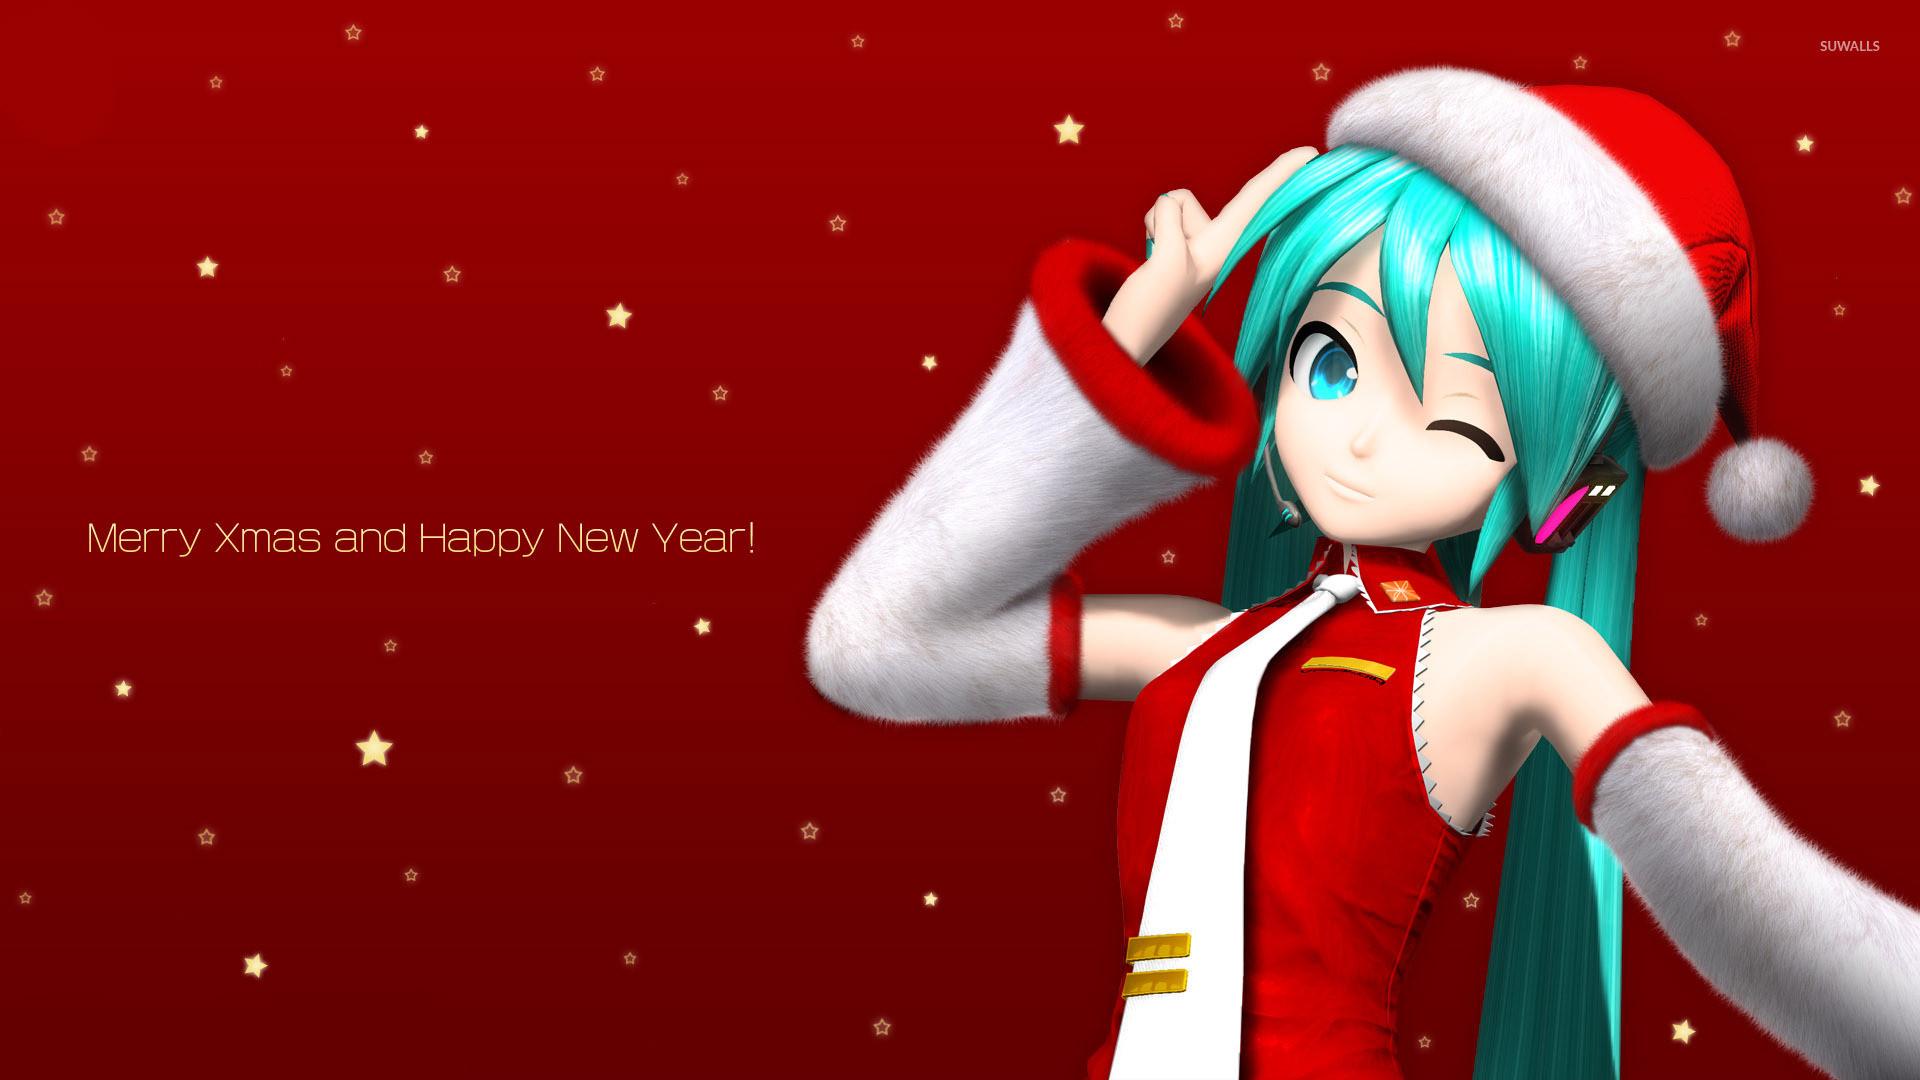 Download Anime Christmas Wallpa Wtg30115454 - Miku Christmas , HD Wallpaper & Backgrounds